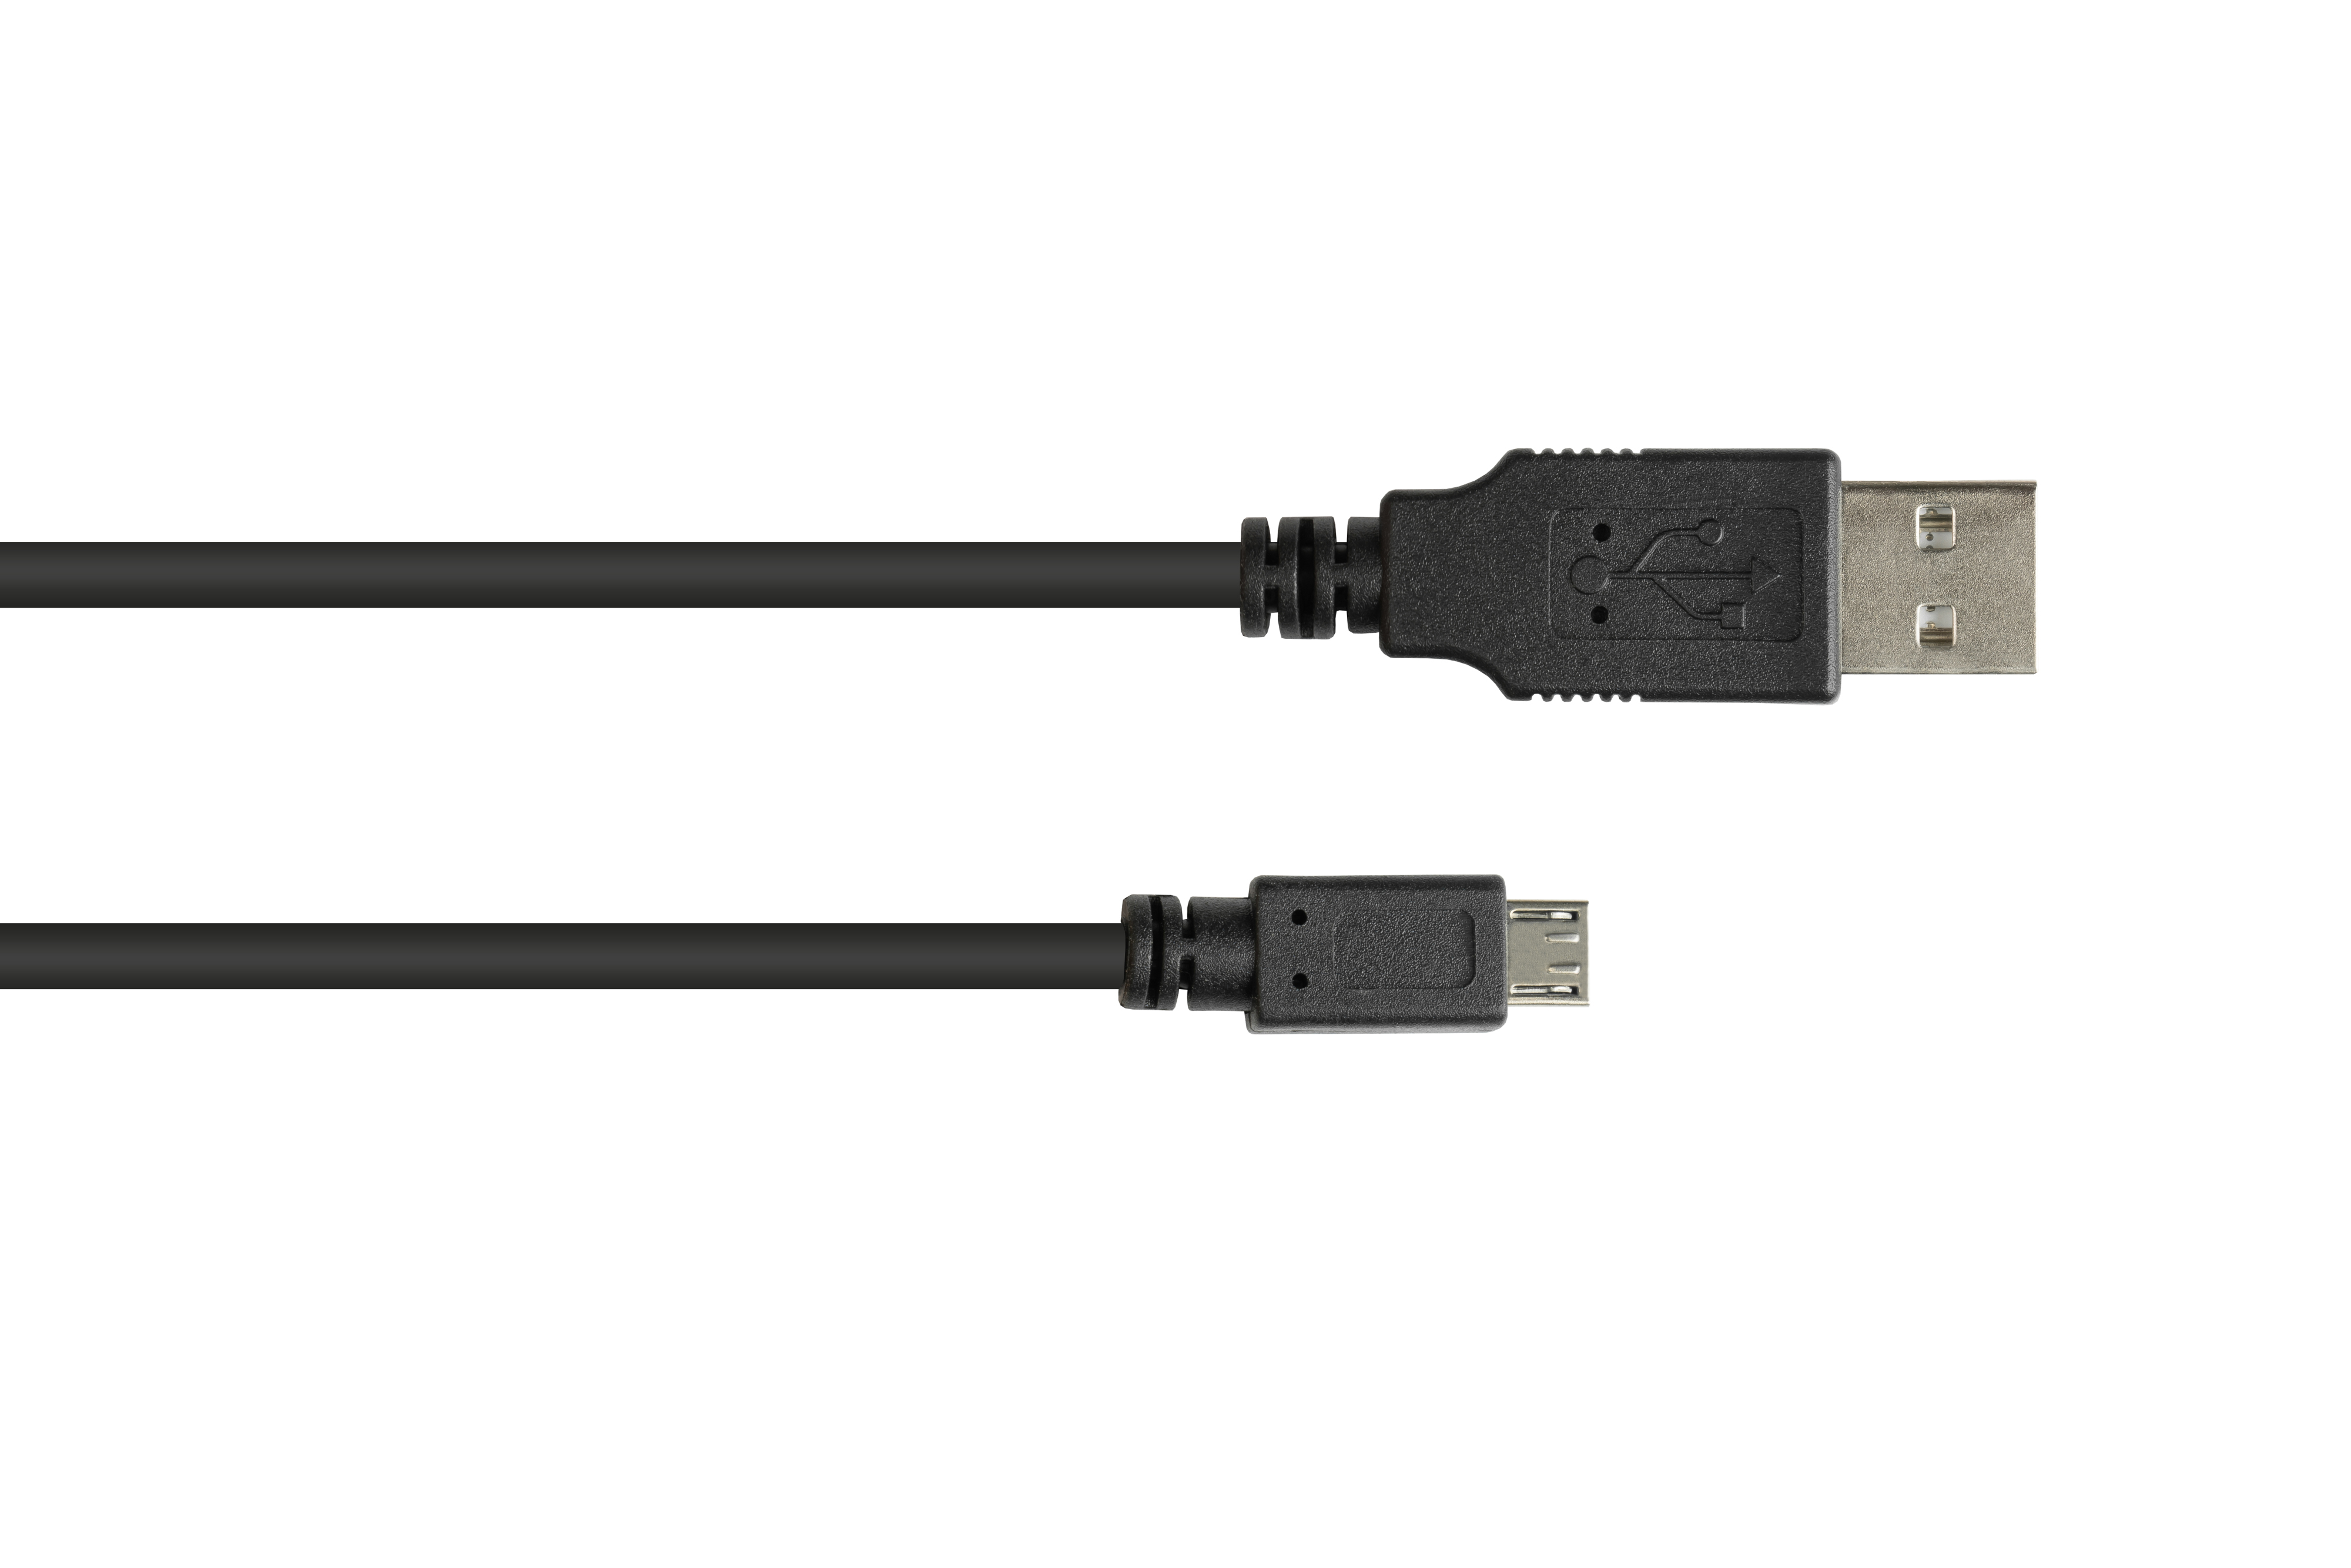 schwarz 2.0 Anschlusskabel Micro B, USB an KABELMEISTER A Stecker Stecker